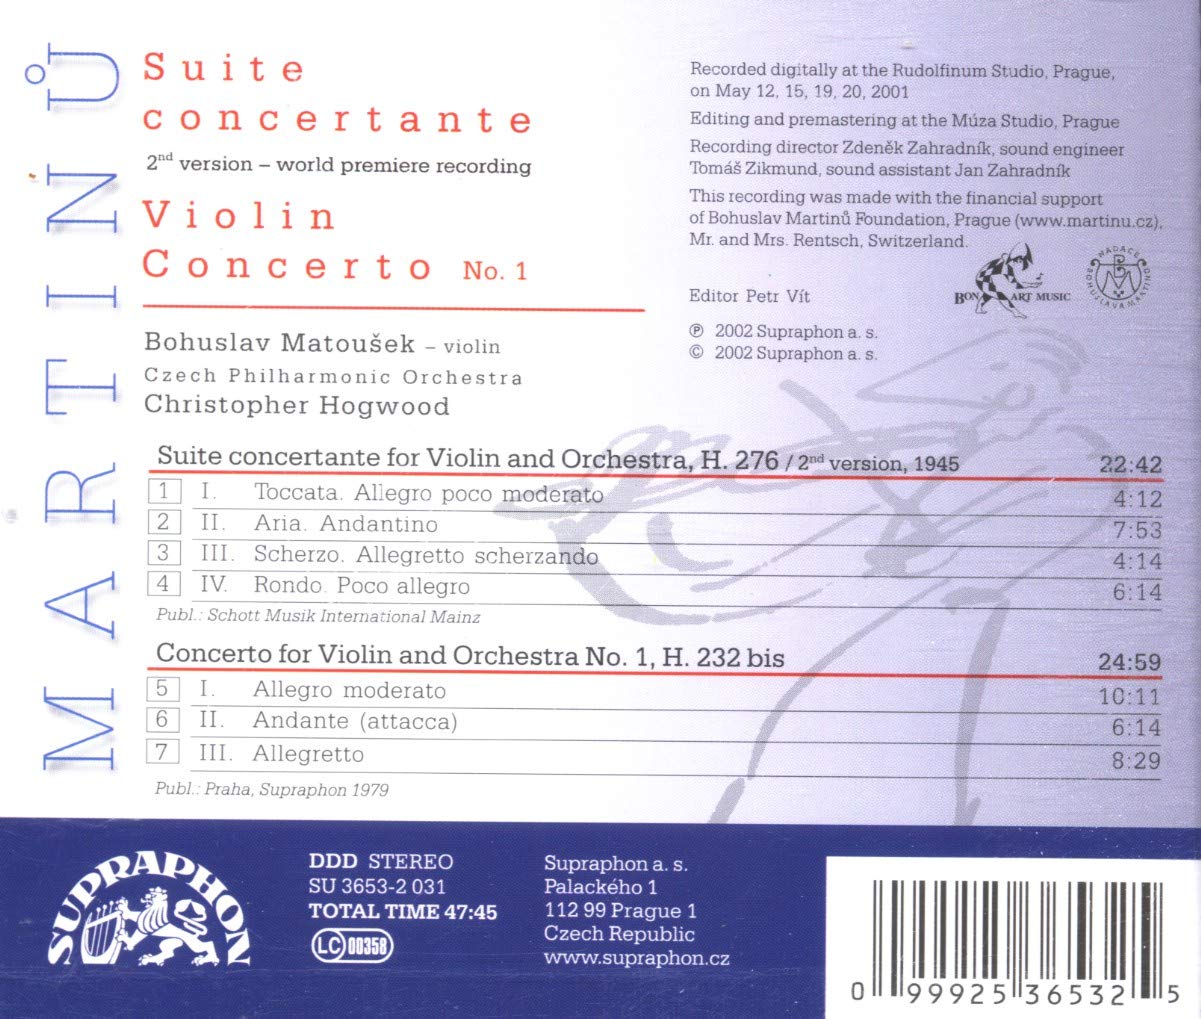 Christopher Hogwood 마르티누: 모음곡 콘체르탄테, 바이올린 협주곡 1번 (Martinu: Suite Concertante for Violin and Orchestra H.276, Violin Concerto H.232 bis) 